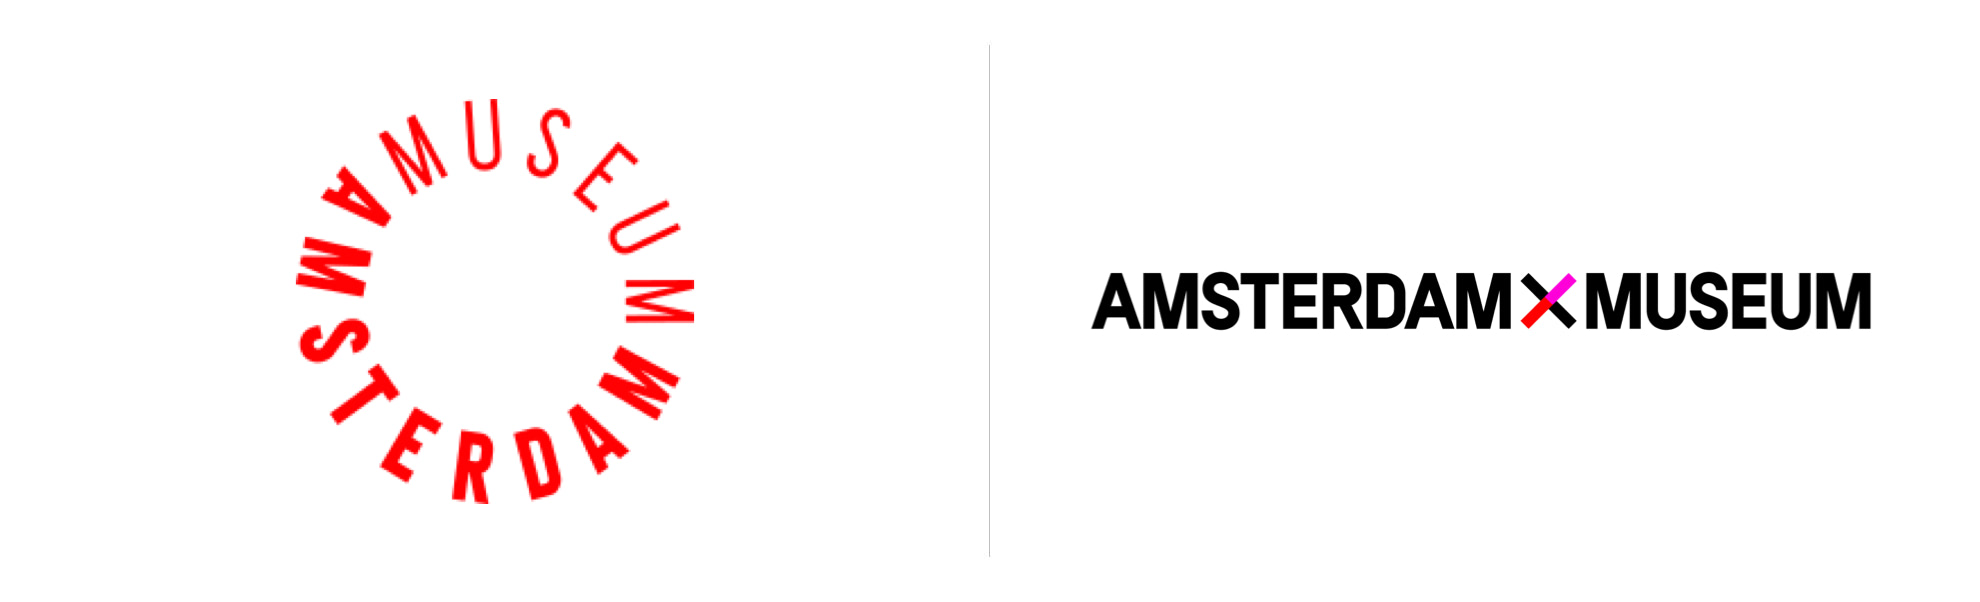 Amsterdamskie Muzeum chce być muzeum przyszłości i pokazuje nowe logo